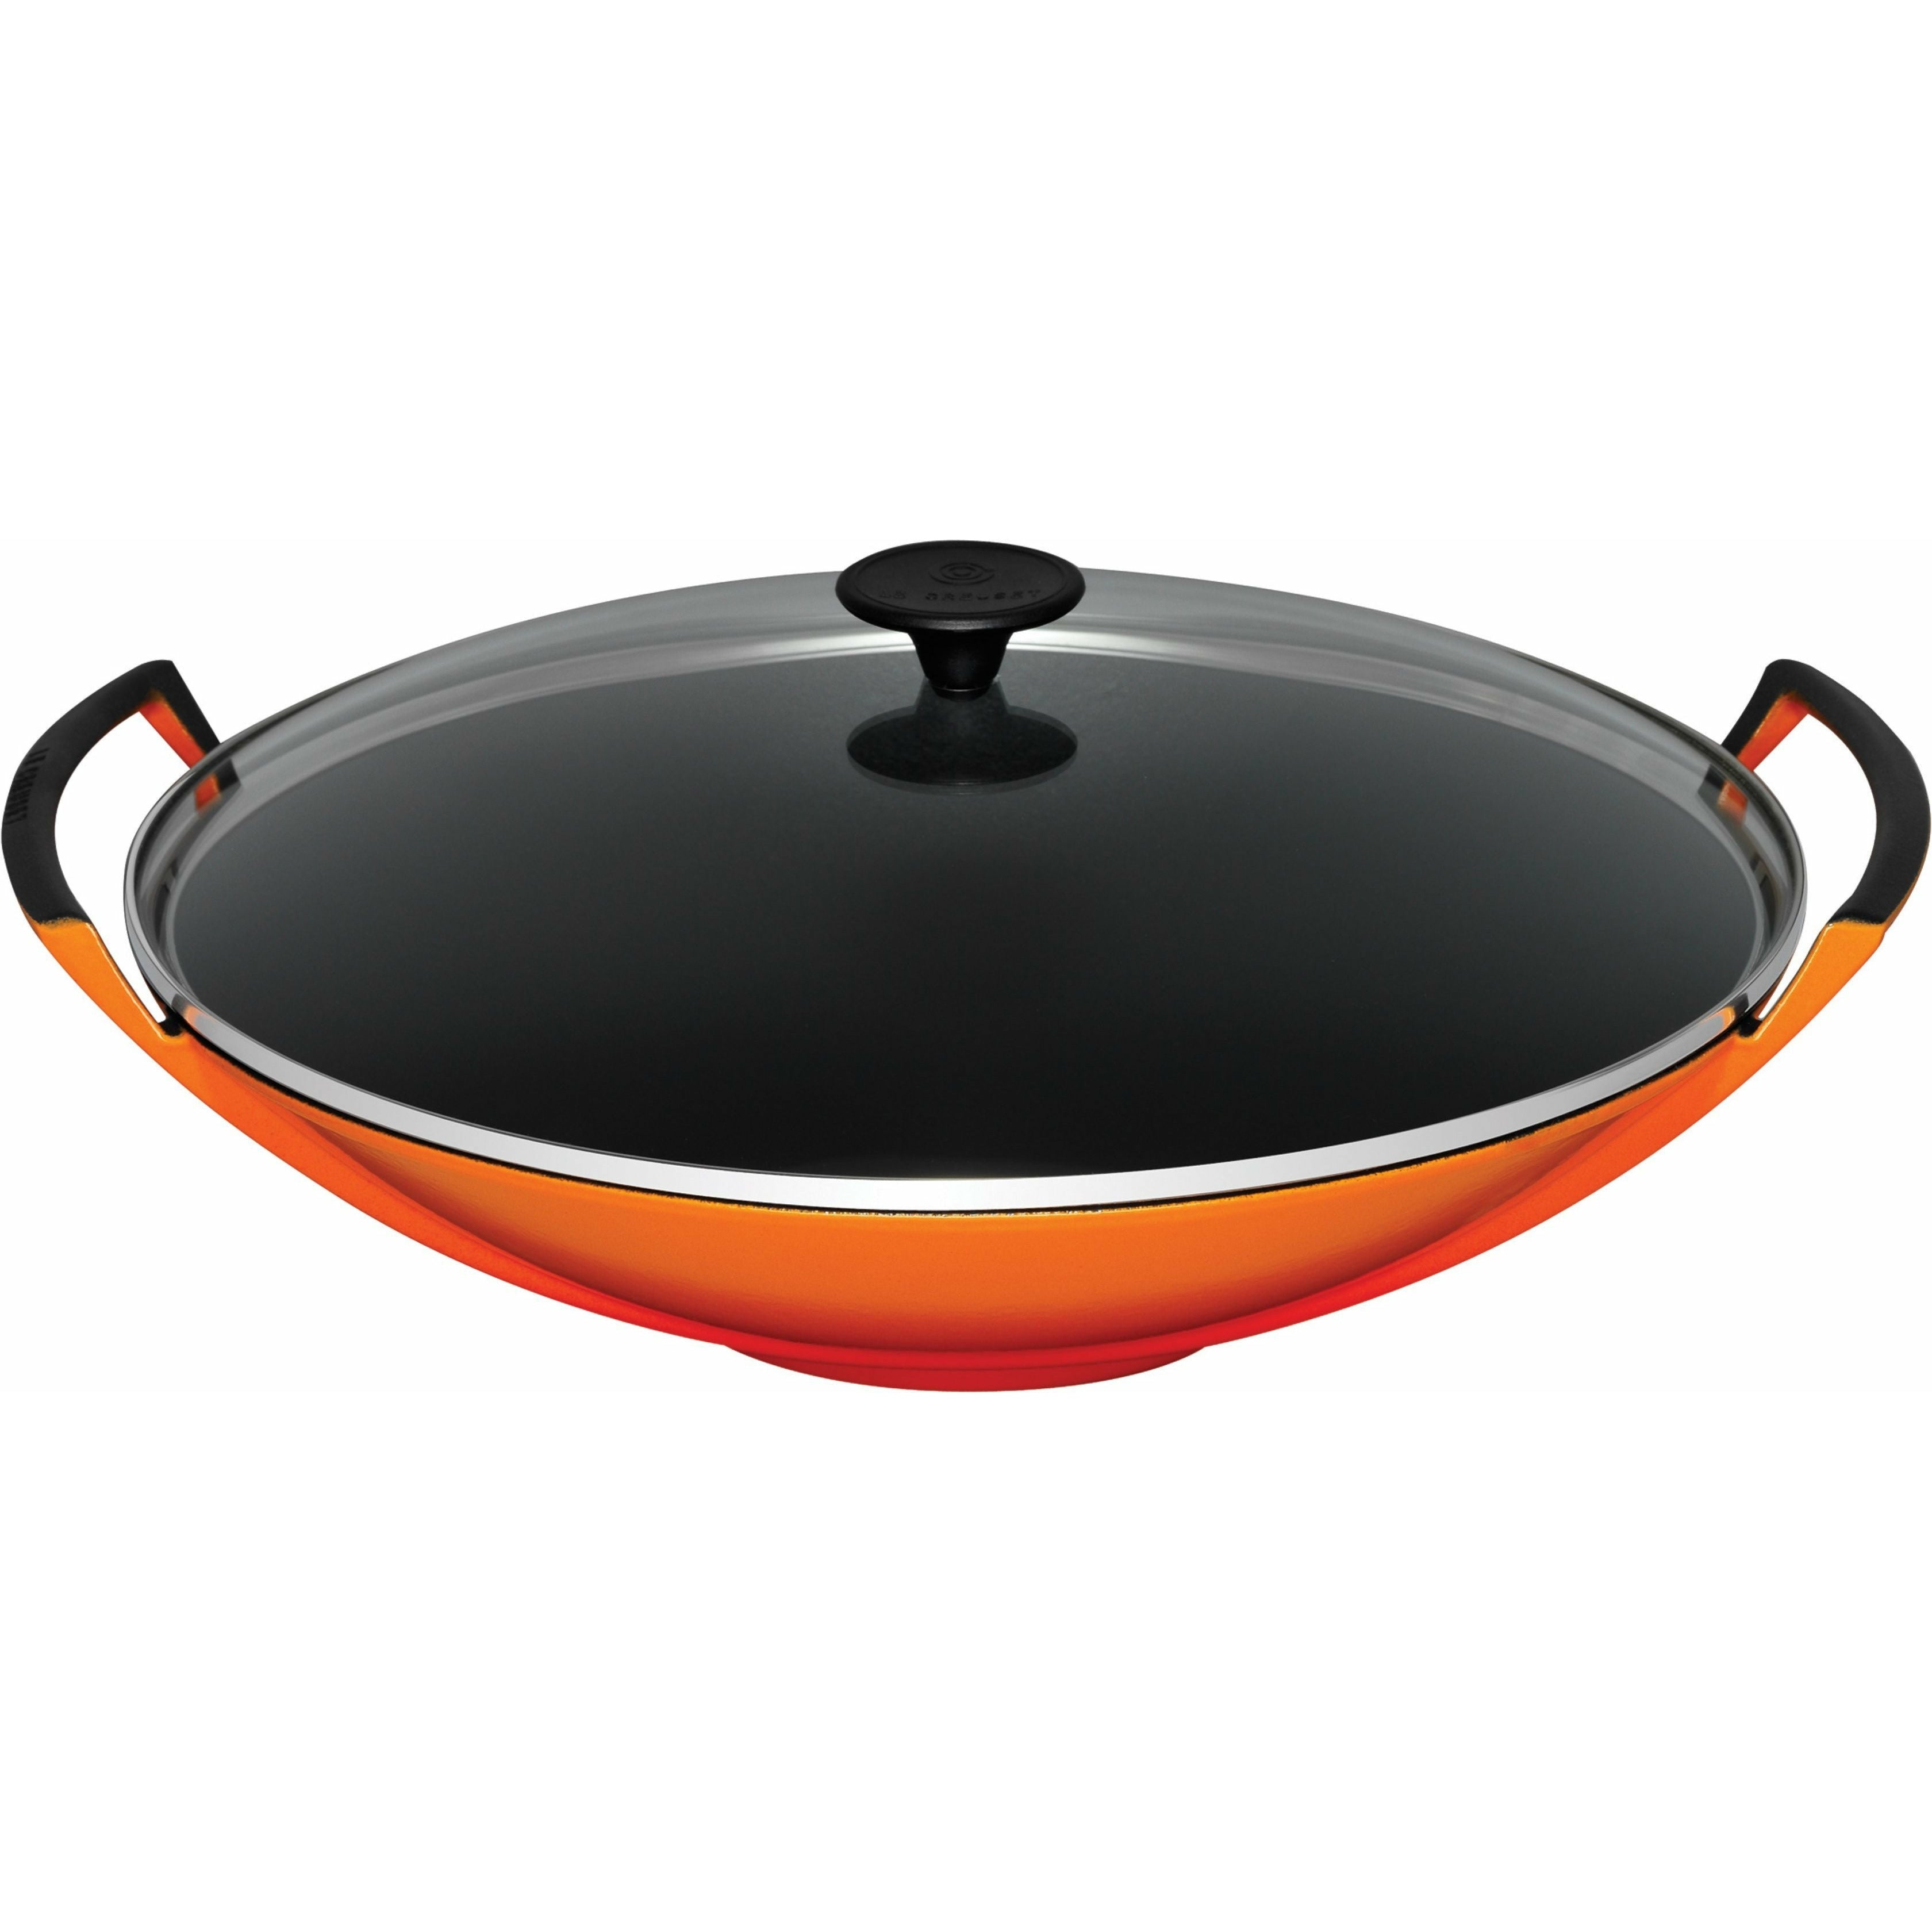 Le creuset wok med glass lokk 36 cm, ovn rød